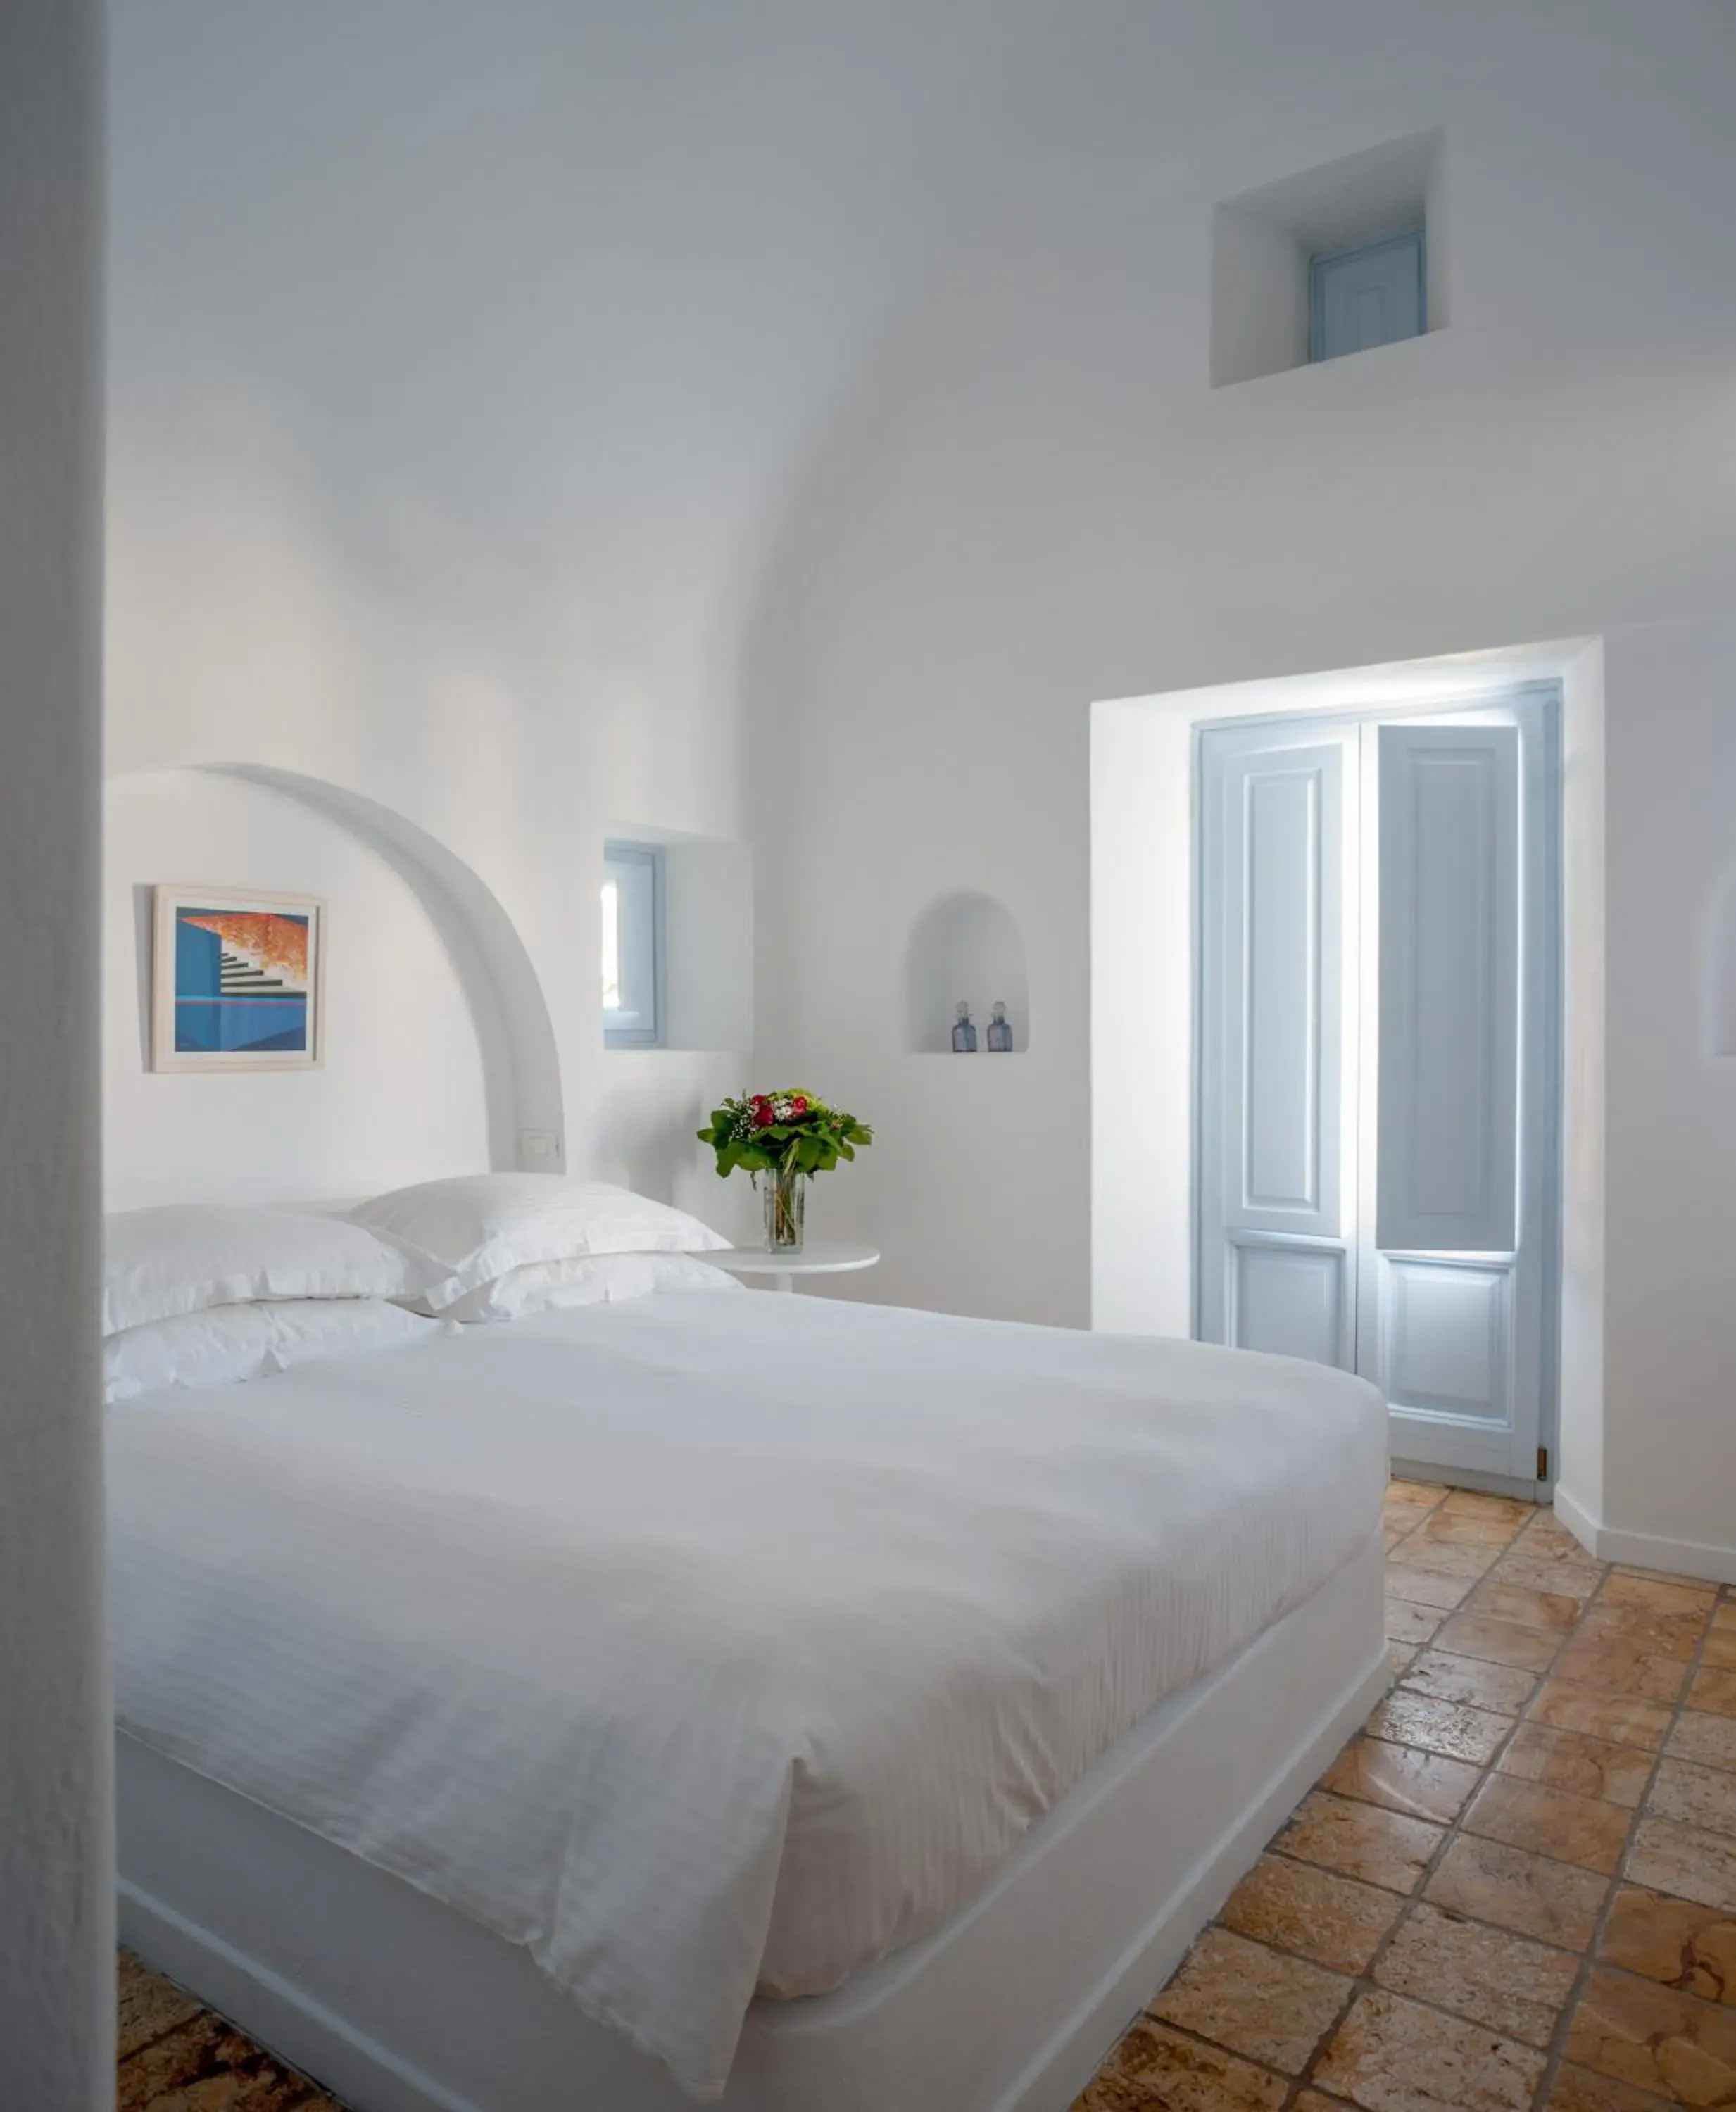 Bed, Room Photo in Aria Suites & Villas